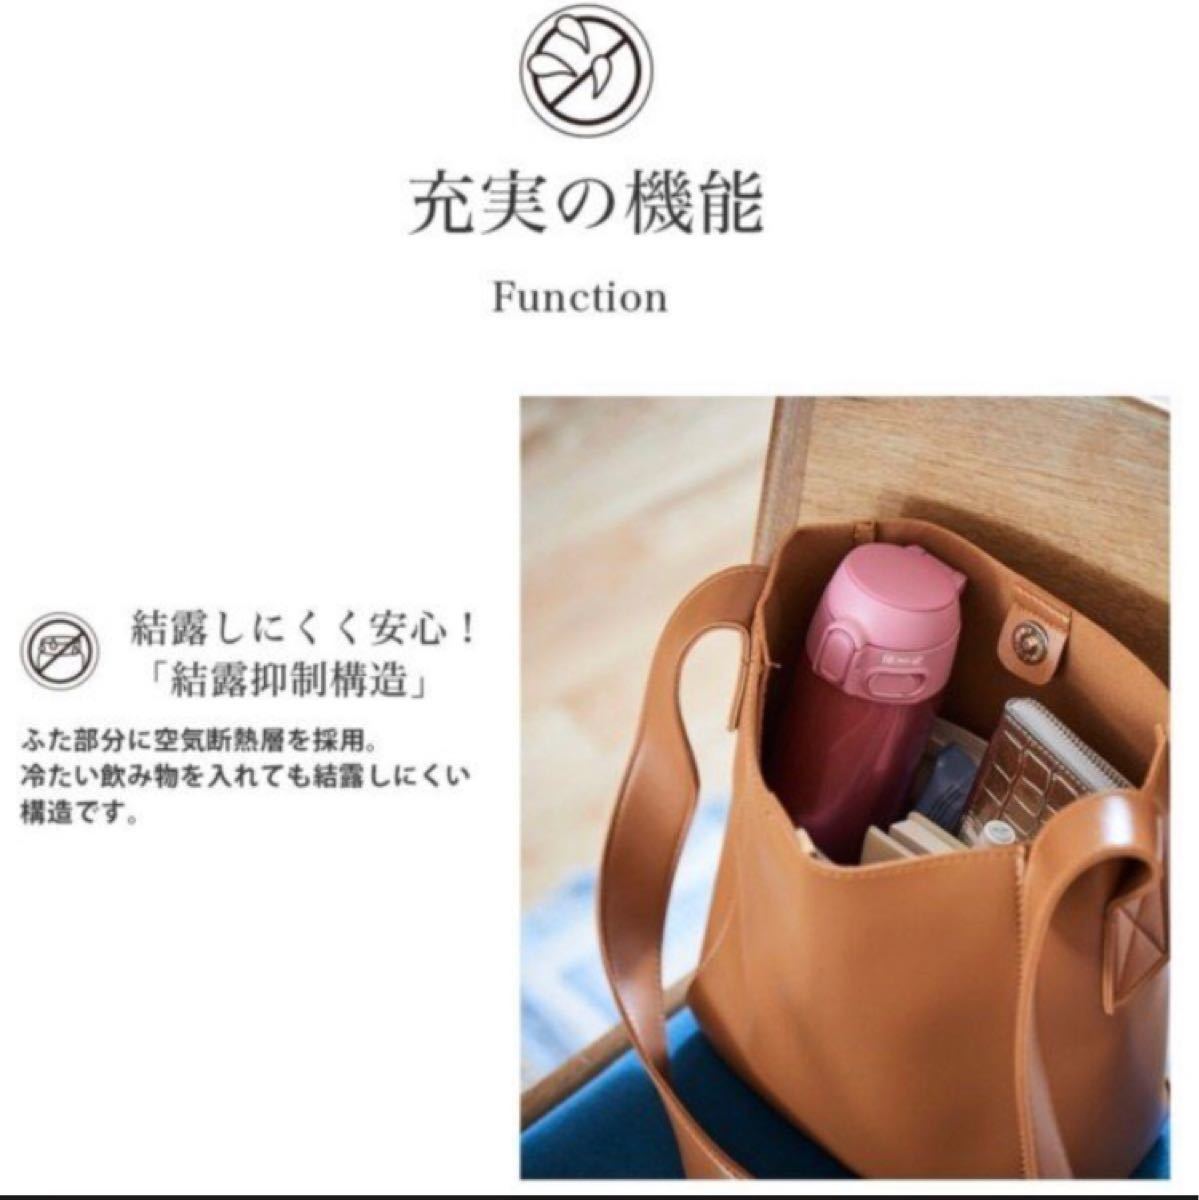 【残りわずか】象印 ZOJIRUSHI ステンレスボトル ピンク ステンレスマグ 水筒360mL 新品未使用未開封 値下げ不可